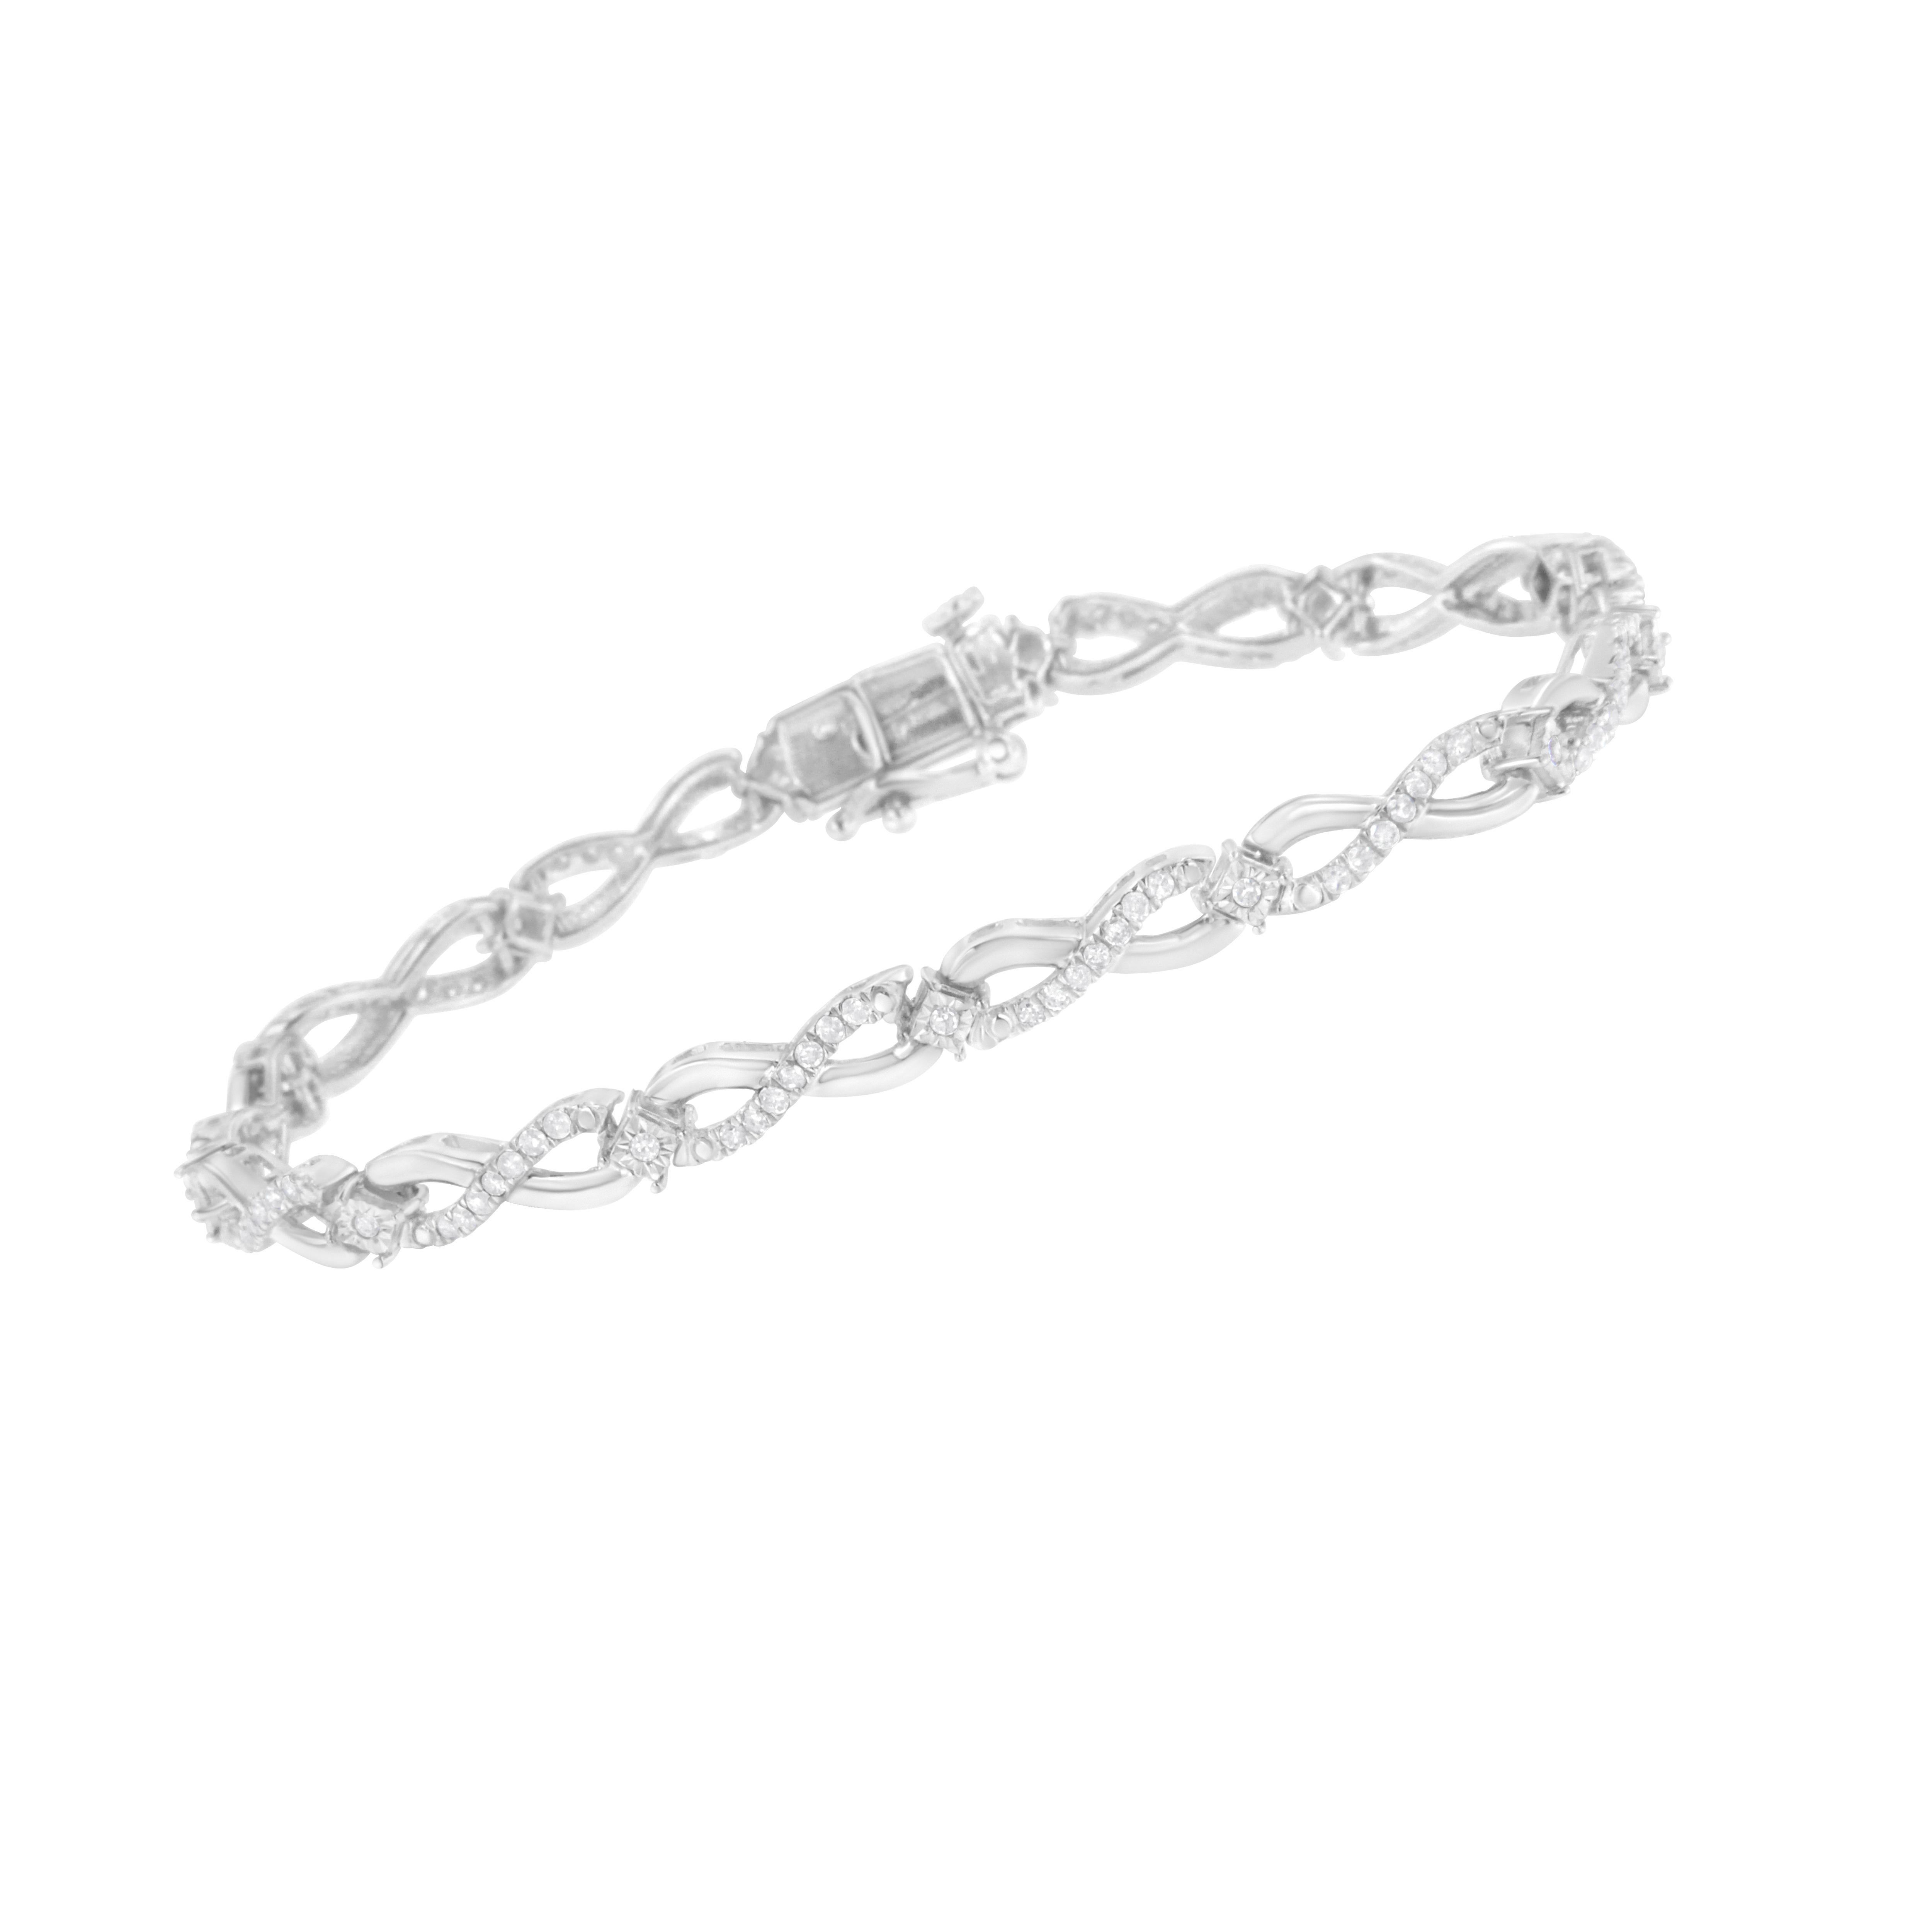 Cent trois diamants de taille ronde pesant 1 ct TDW éblouissent ce bracelet en argent sterling. Des rubans souples s'enroulent autour et créent un symbole de l'infini. Des diamants scintillants de taille ronde incrustent l'un des côtés du symbole.